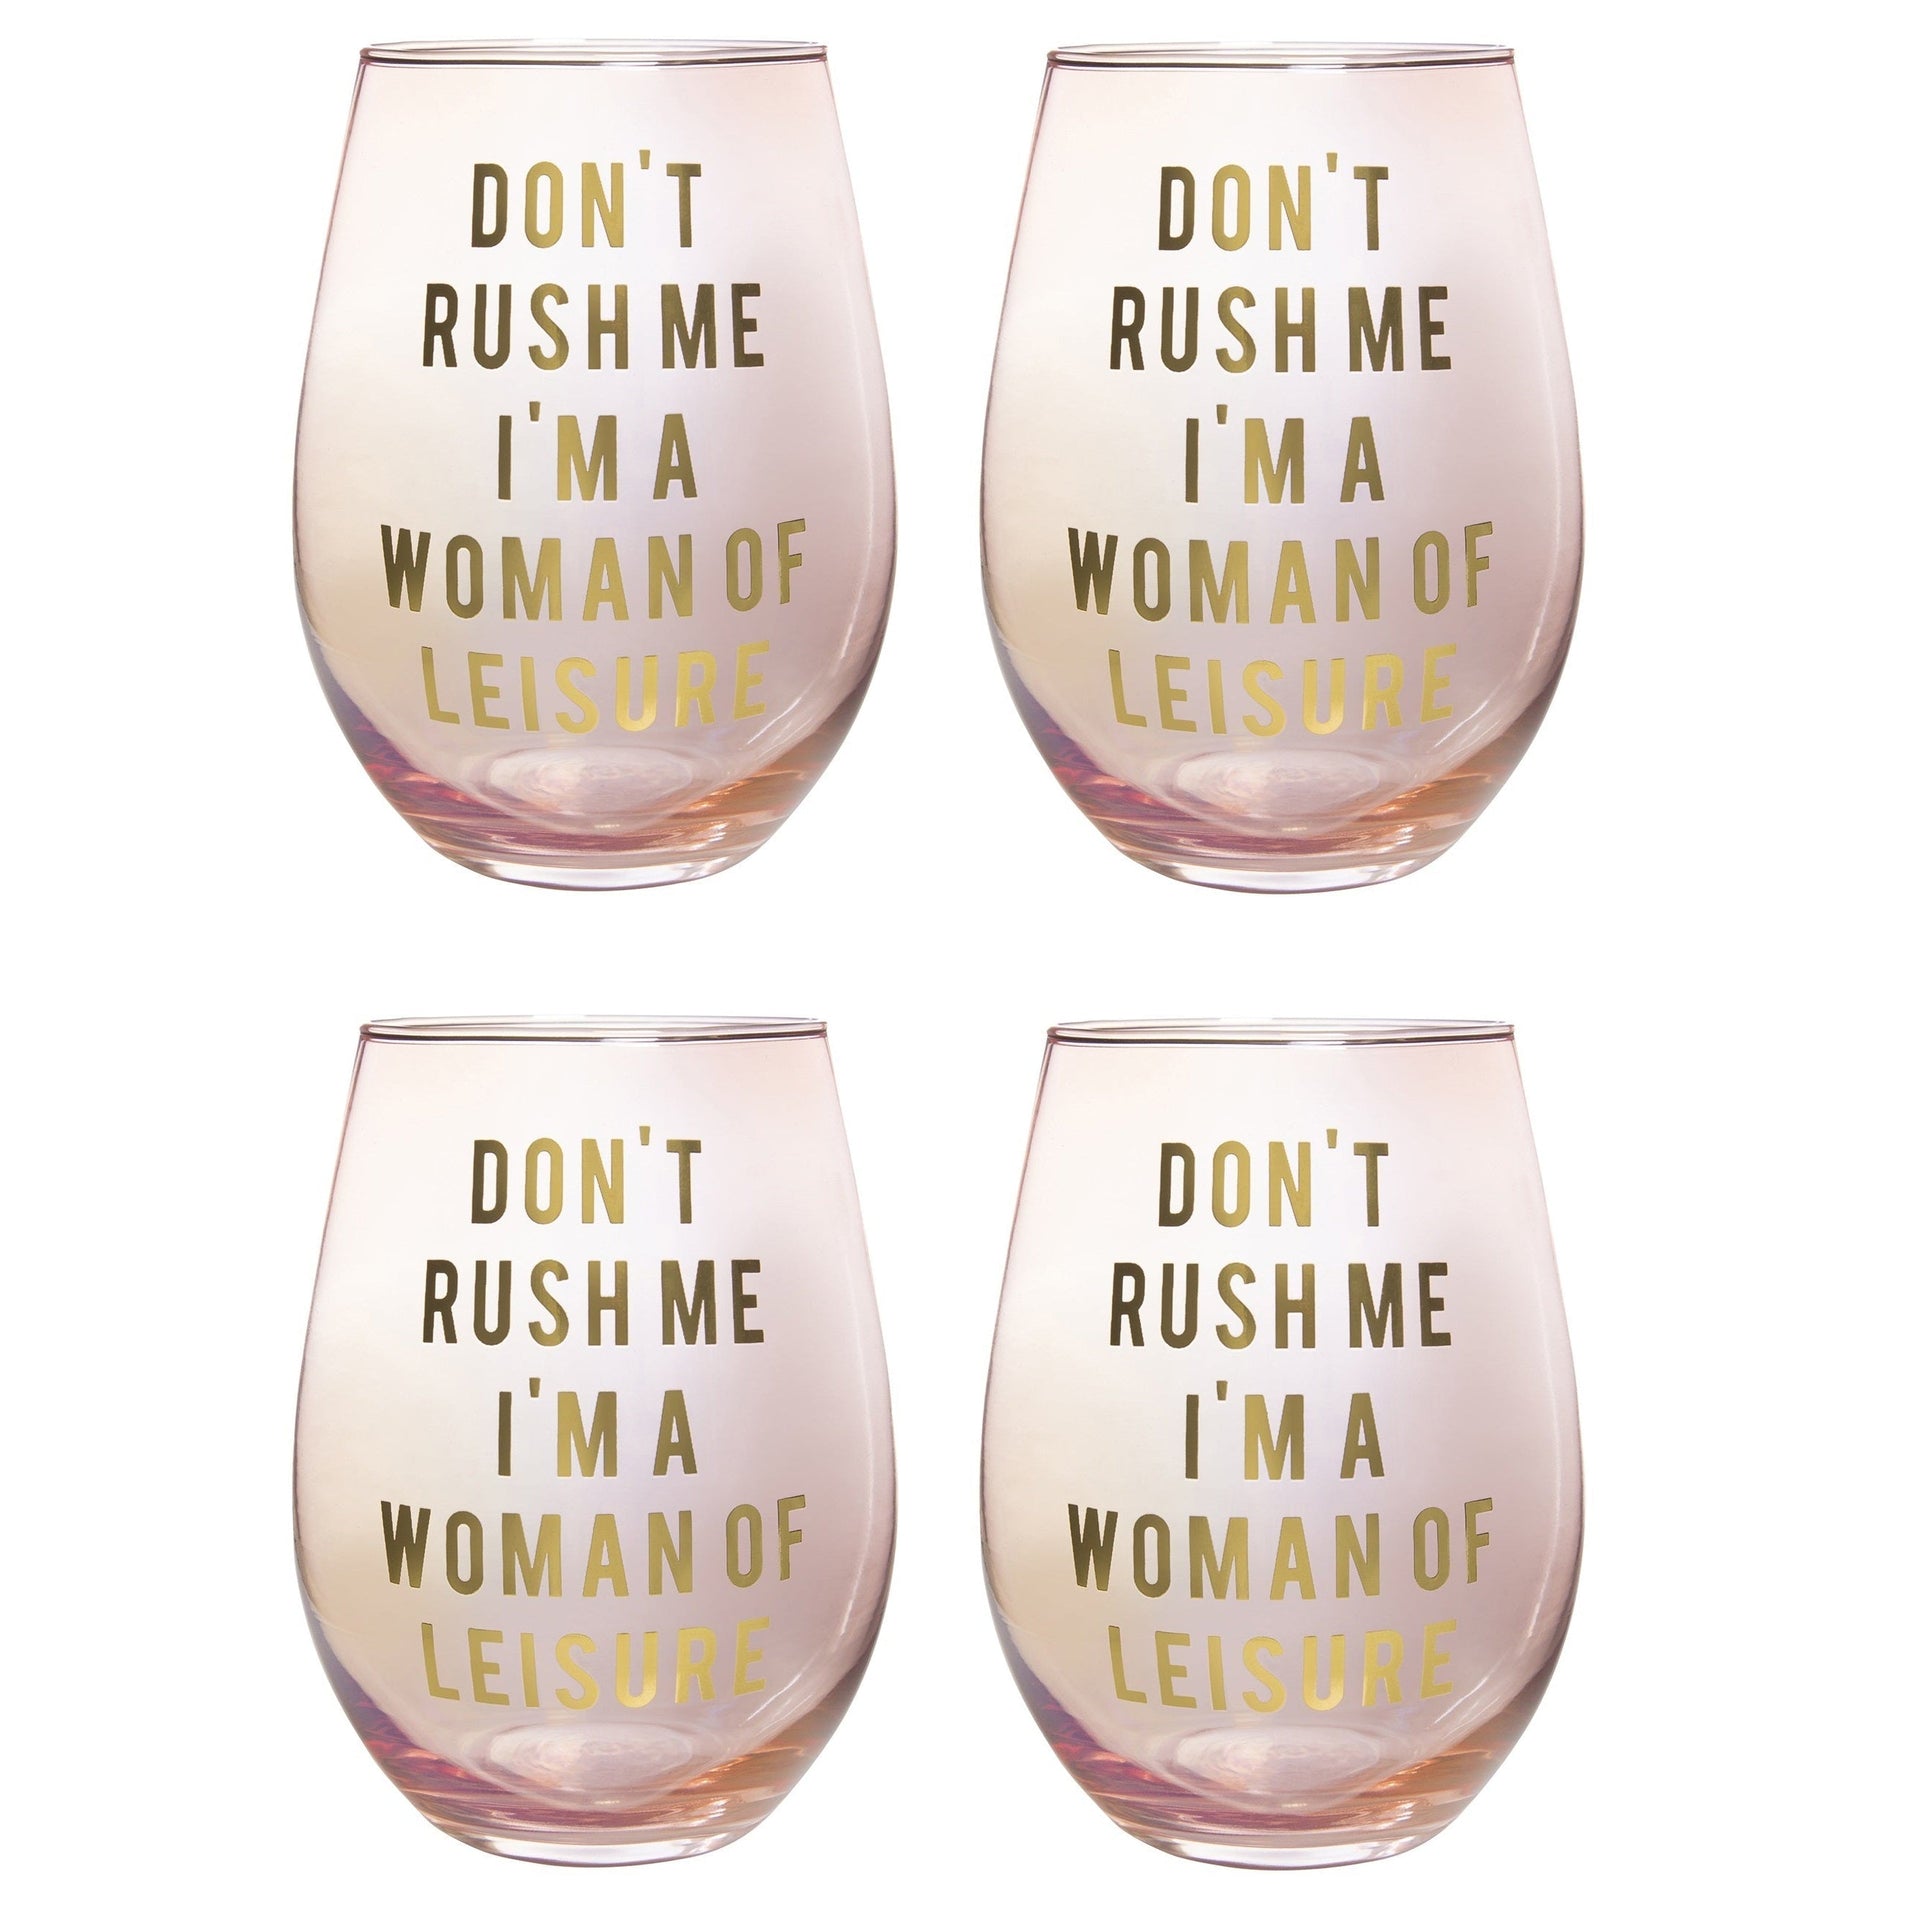 Stackable Wine Glasses Set - Pink Orange - Set of 4 - Slant Collections